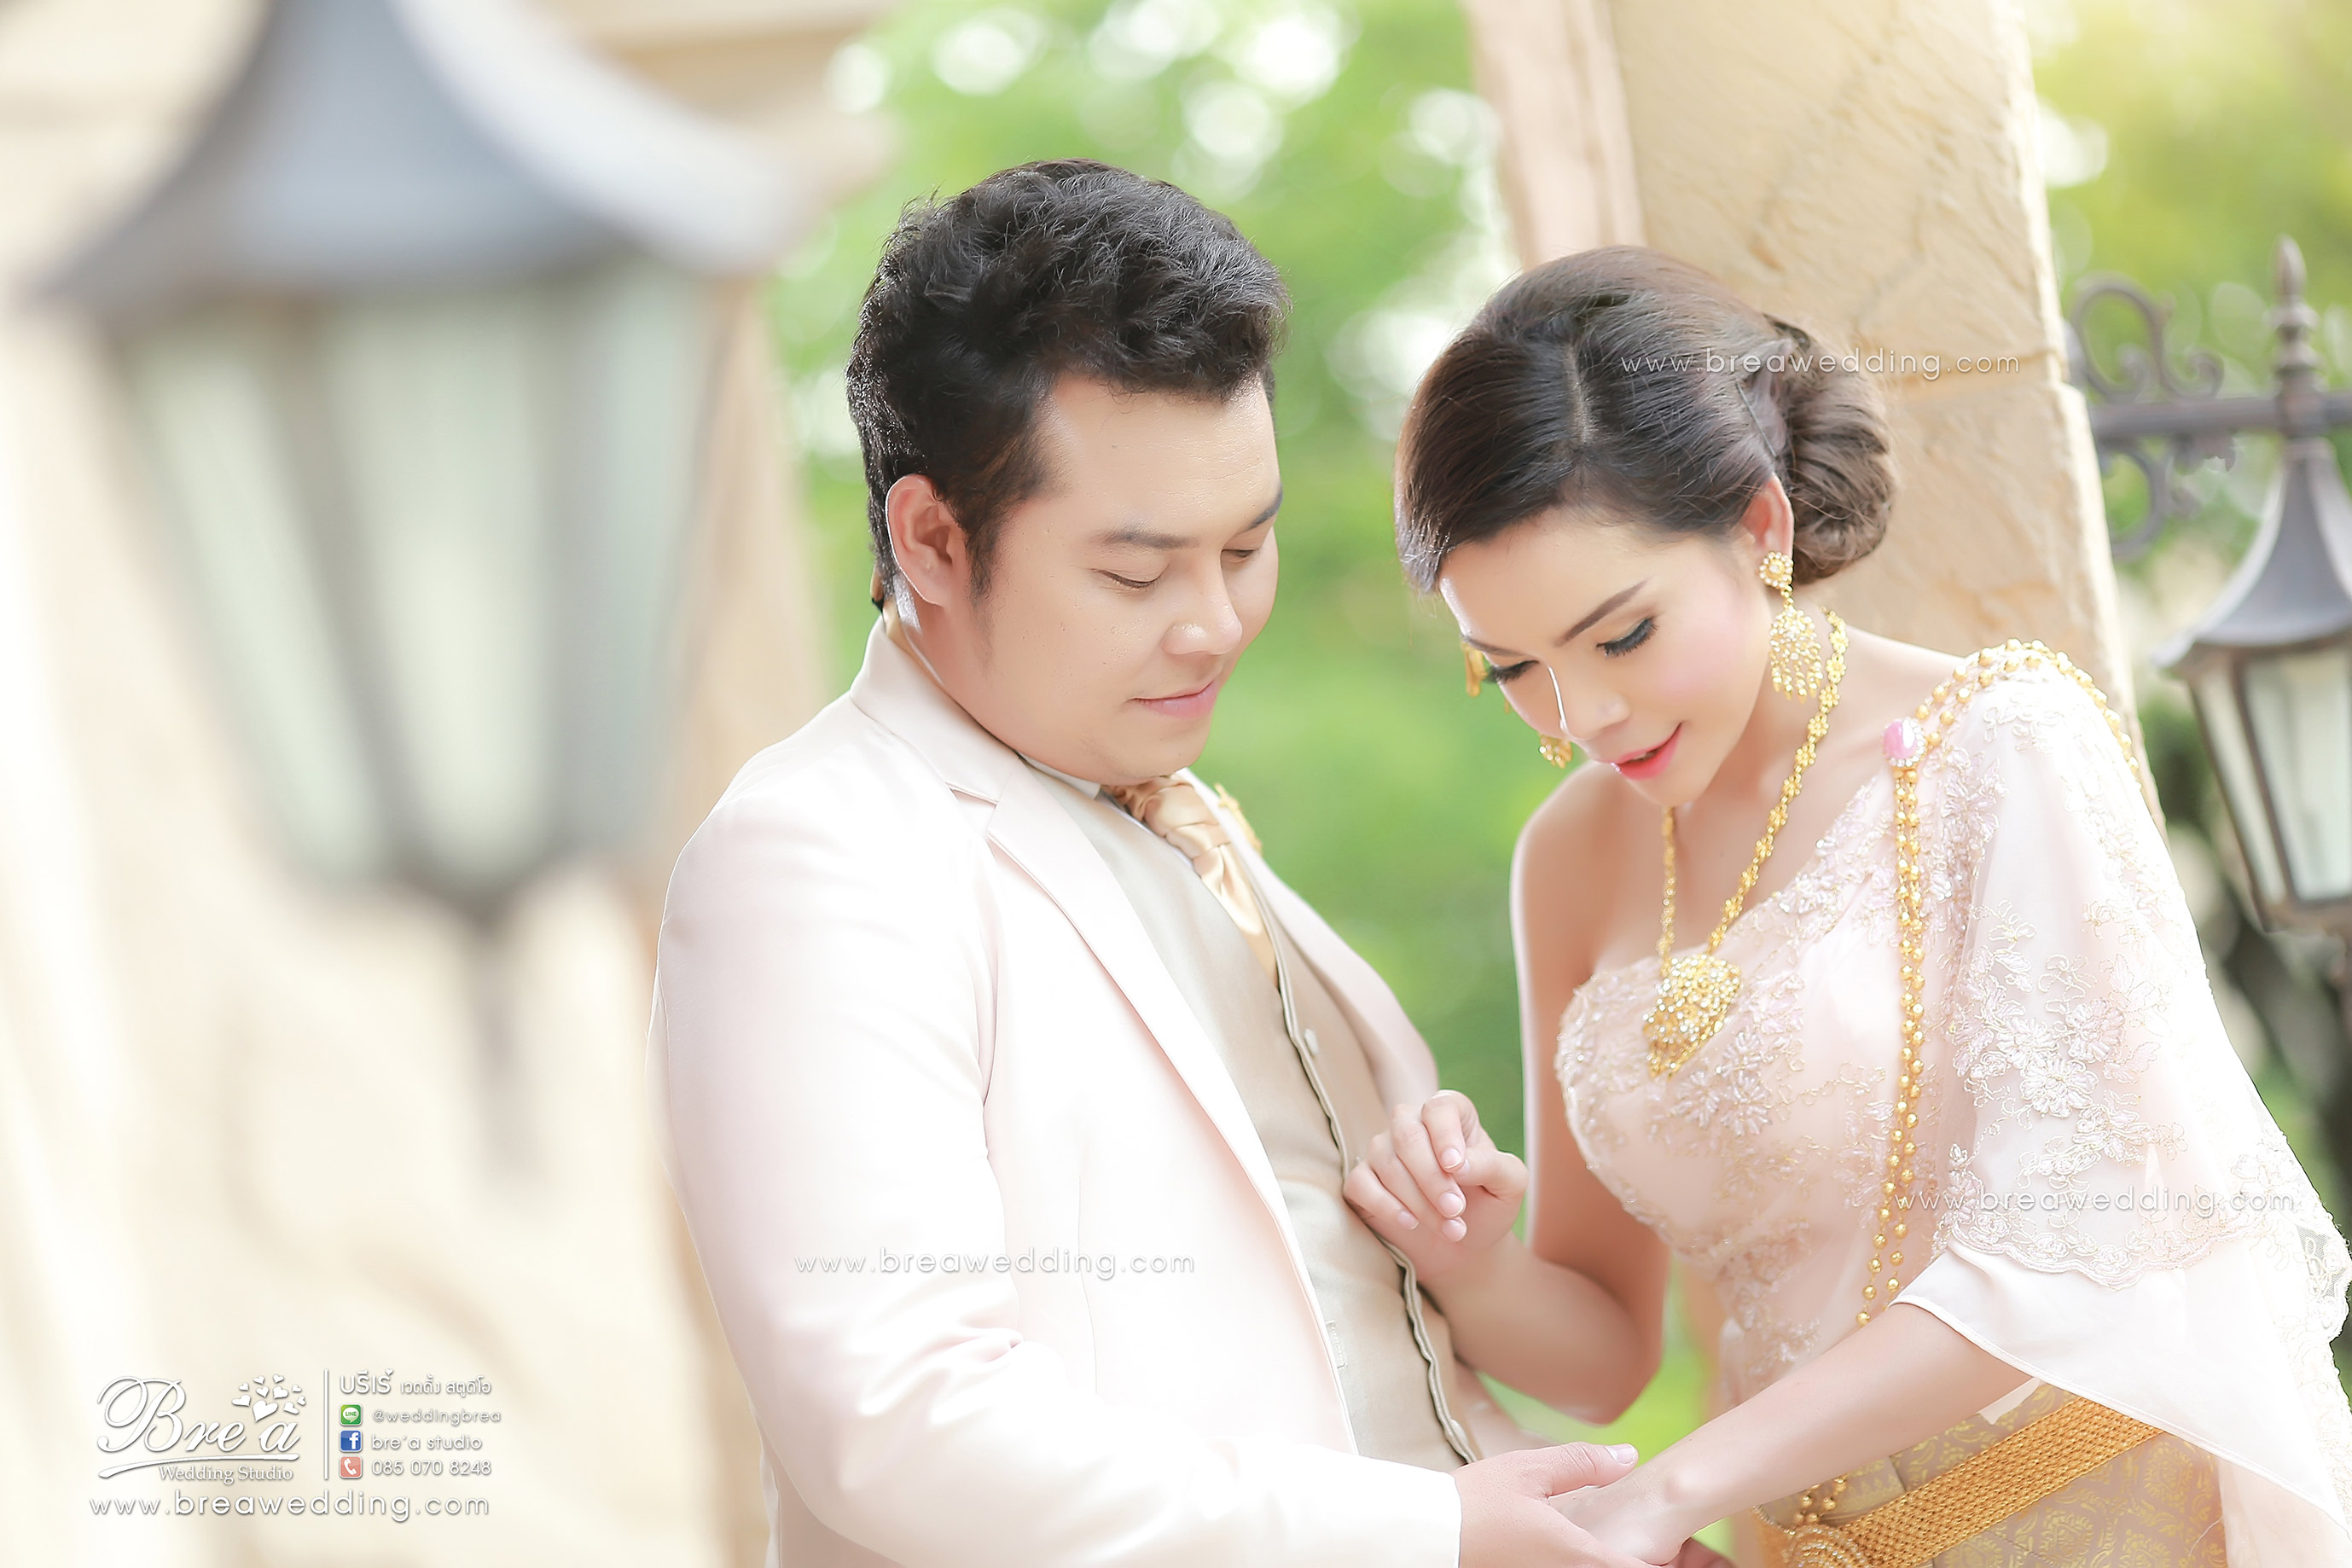 หาช่างภาพงานแต่ง พรีเวดดิ้ง ถ่ายรูปแต่งงาน บางบัวทอง นนทบุรี ชุดแต่งงาน